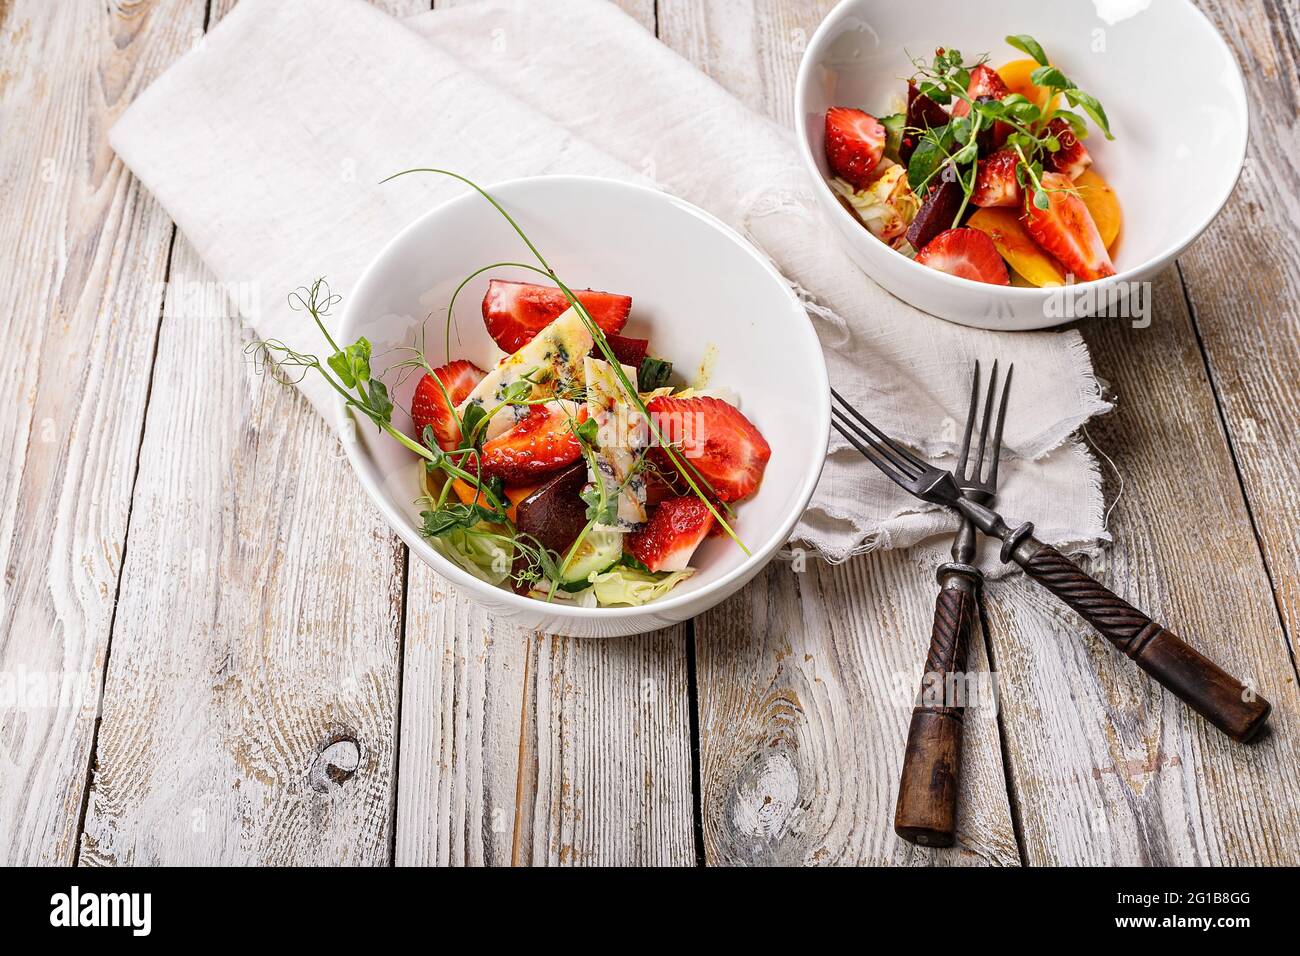 Salade d'été délicieuse. Salade de fraises fraîches, betteraves cuites au four, tomates jaunes, fromage bleu et herbes dans un bol blanc sur un filet rustique léger Banque D'Images